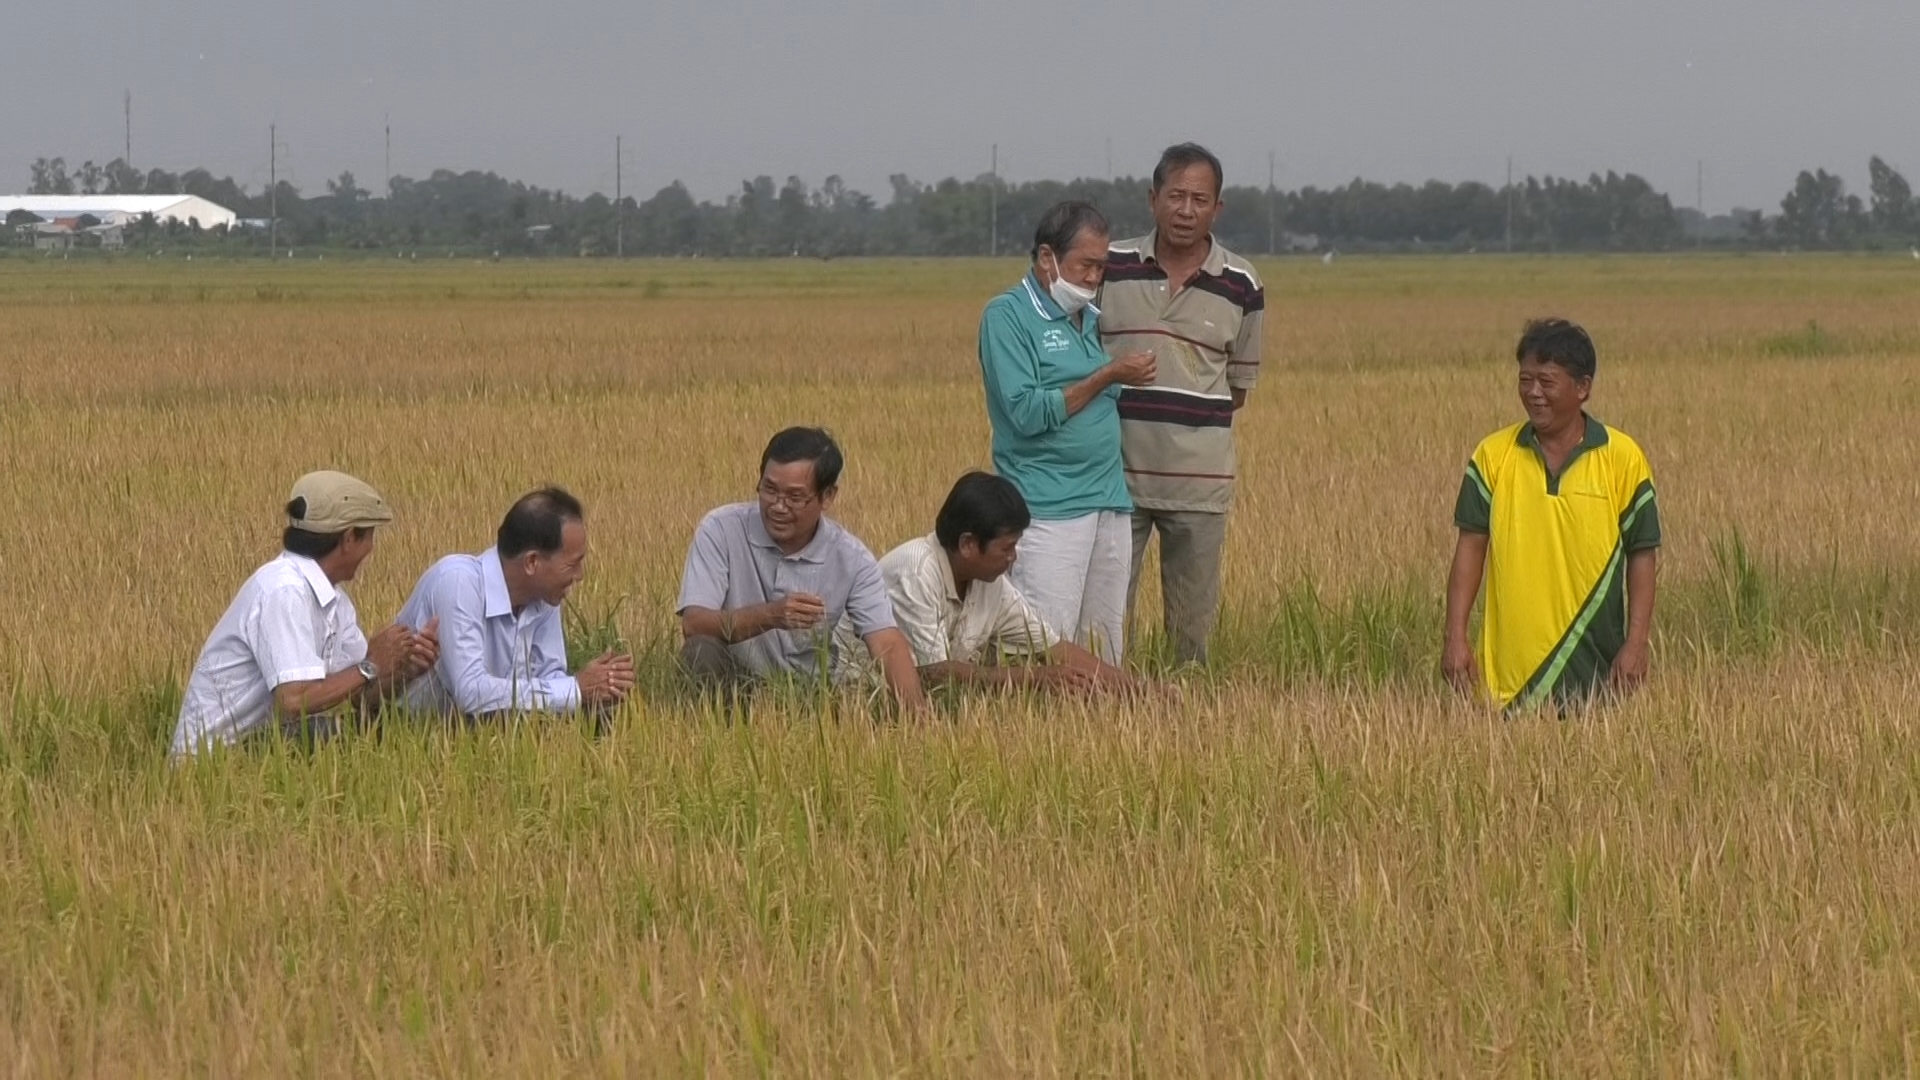 Cần Thơ Sản xuất lúa theo hướng hữu cơ để phát triển bền vững  Viện Khoa  học Nông nghiệp Việt Nam